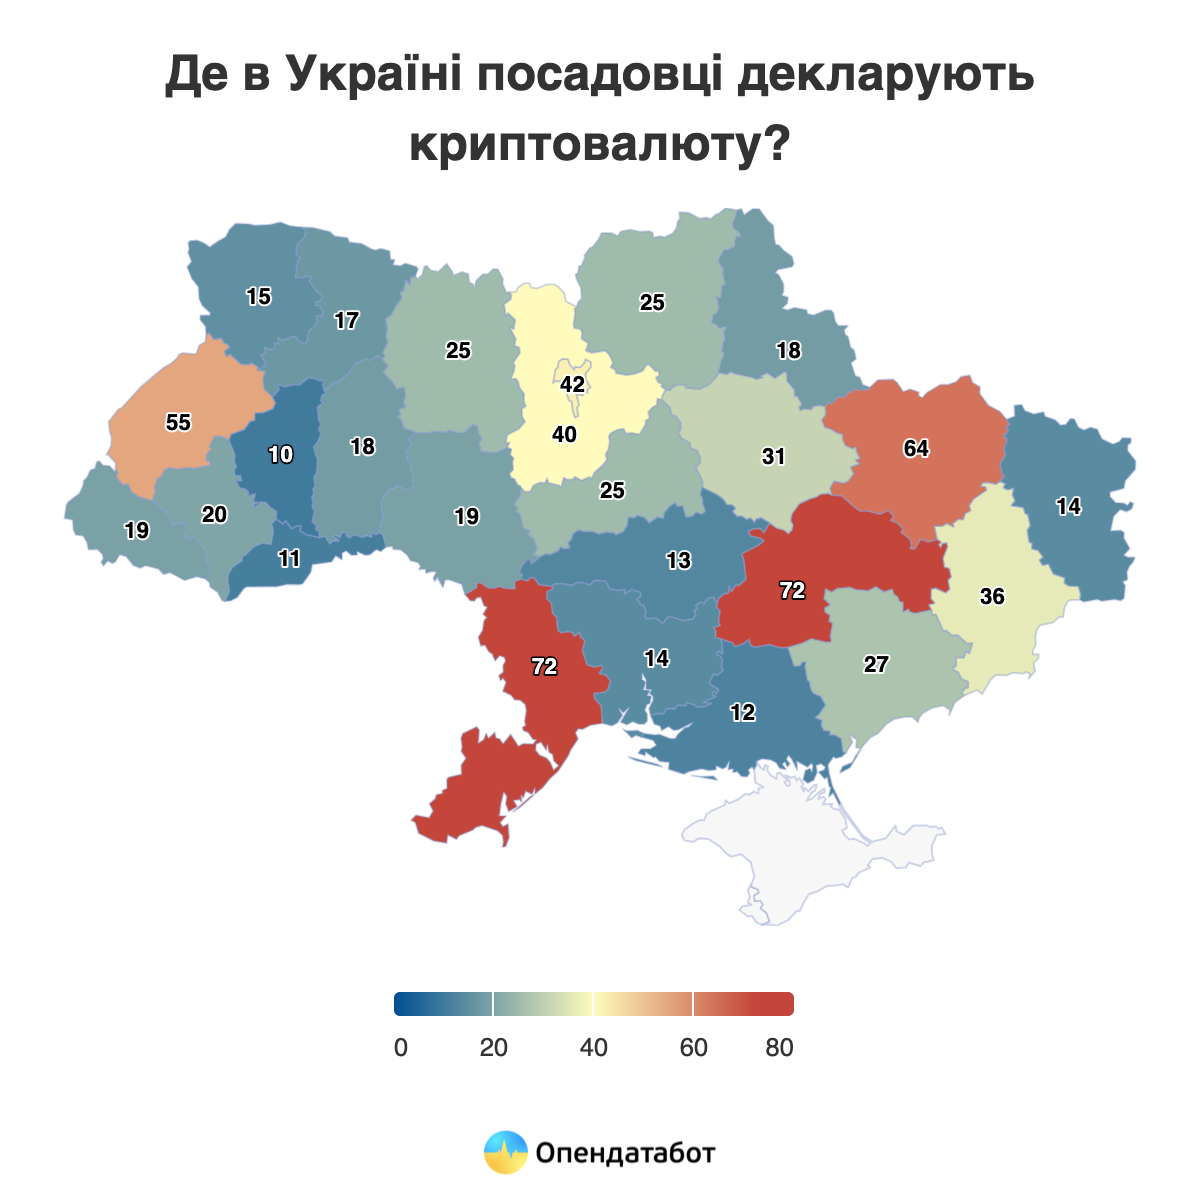 Днепропетровская область – первая по количеству чиновников с криптовалютой